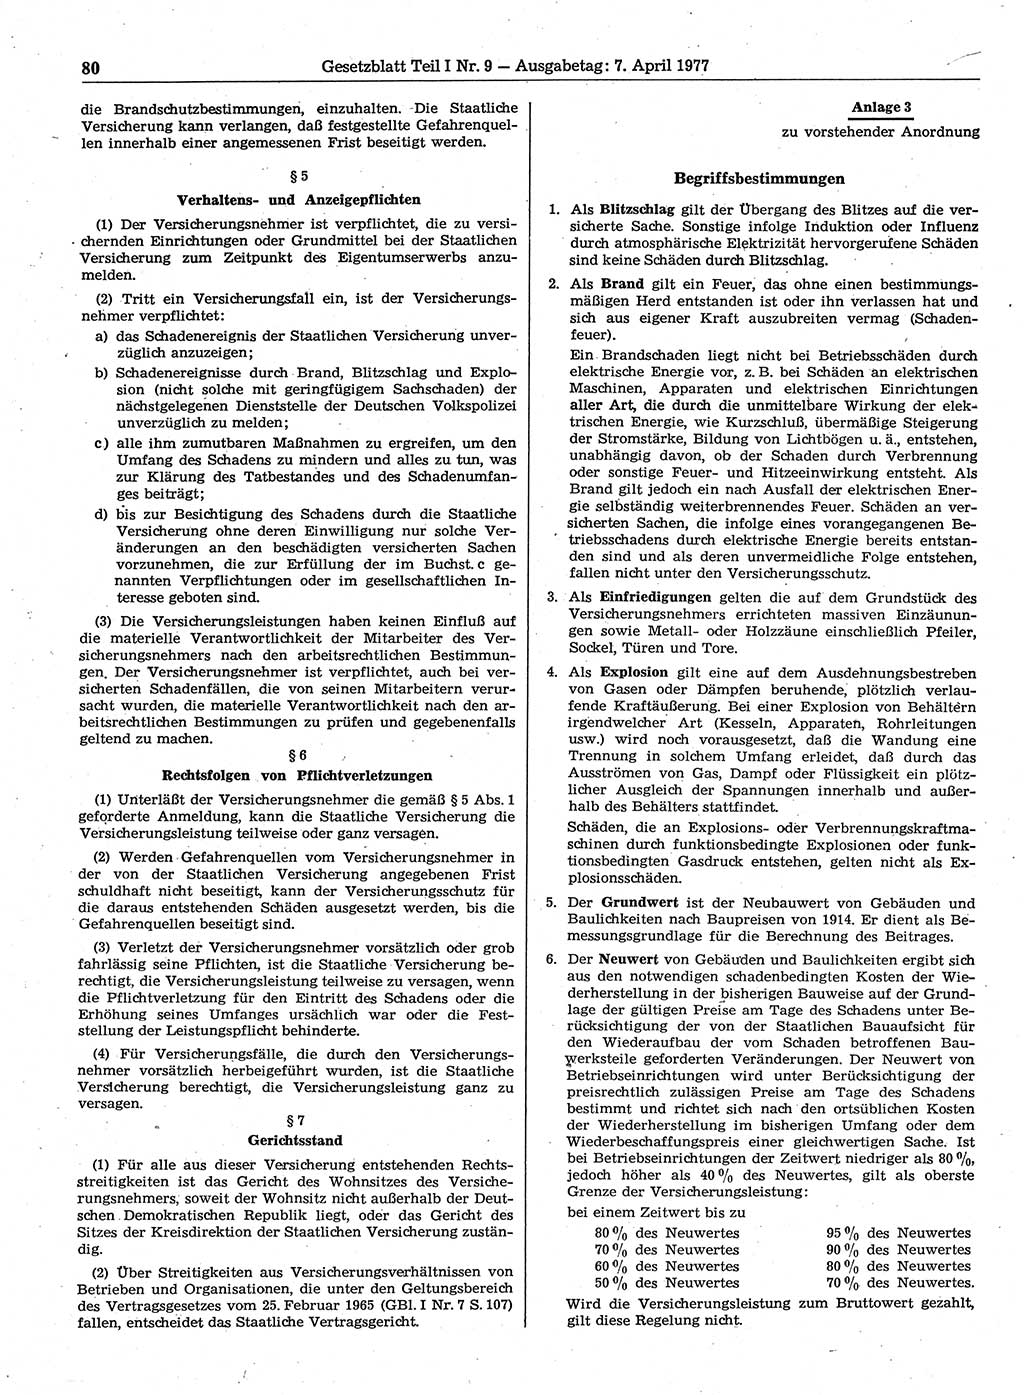 Gesetzblatt (GBl.) der Deutschen Demokratischen Republik (DDR) Teil Ⅰ 1977, Seite 80 (GBl. DDR Ⅰ 1977, S. 80)